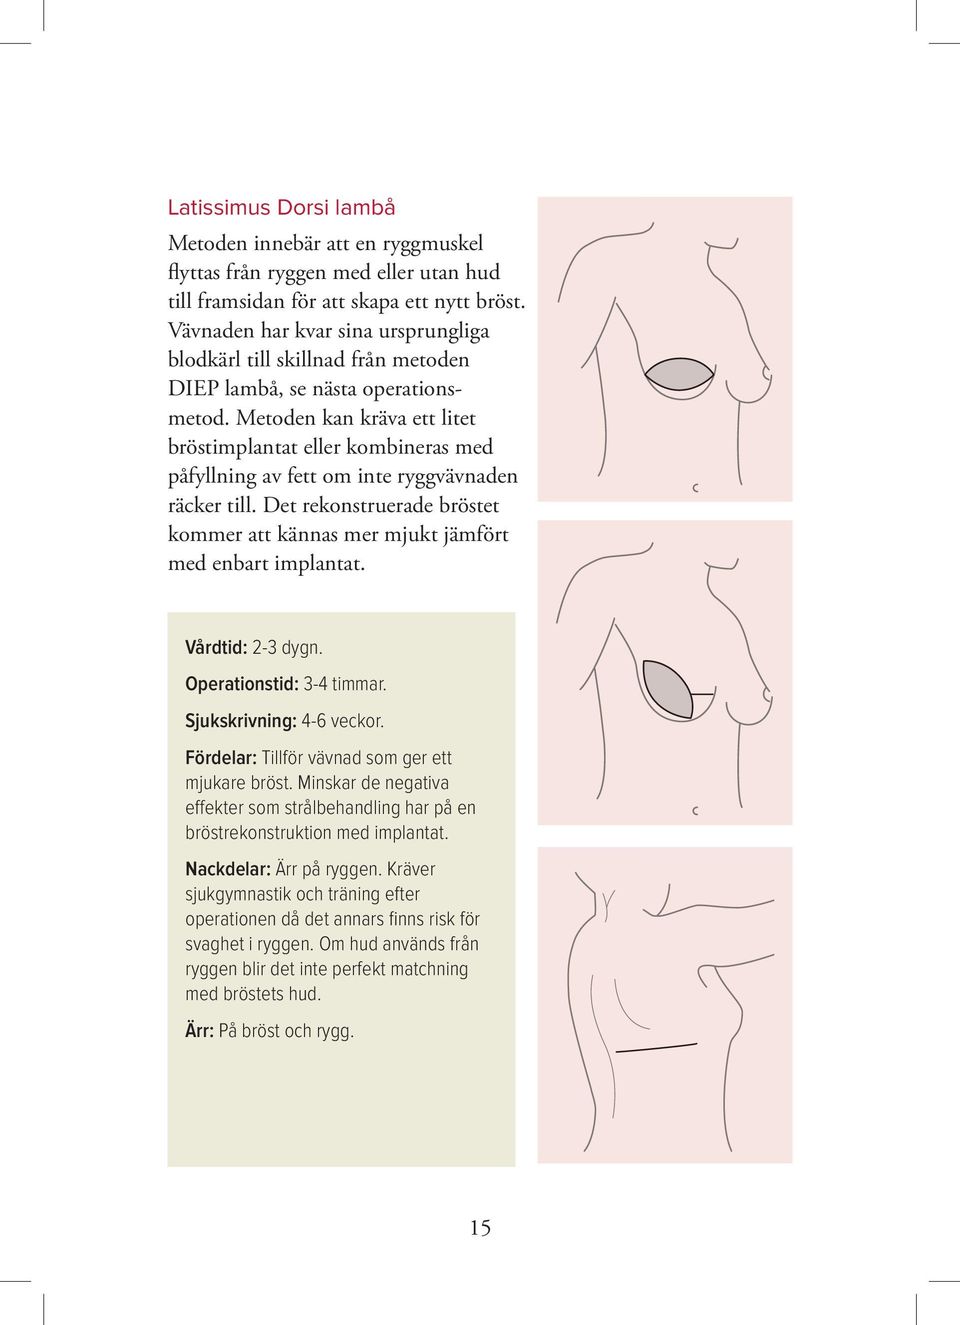 Metoden kan kräva ett litet bröstimplantat eller kombineras med påfyllning av fett om inte ryggvävnaden räcker till.